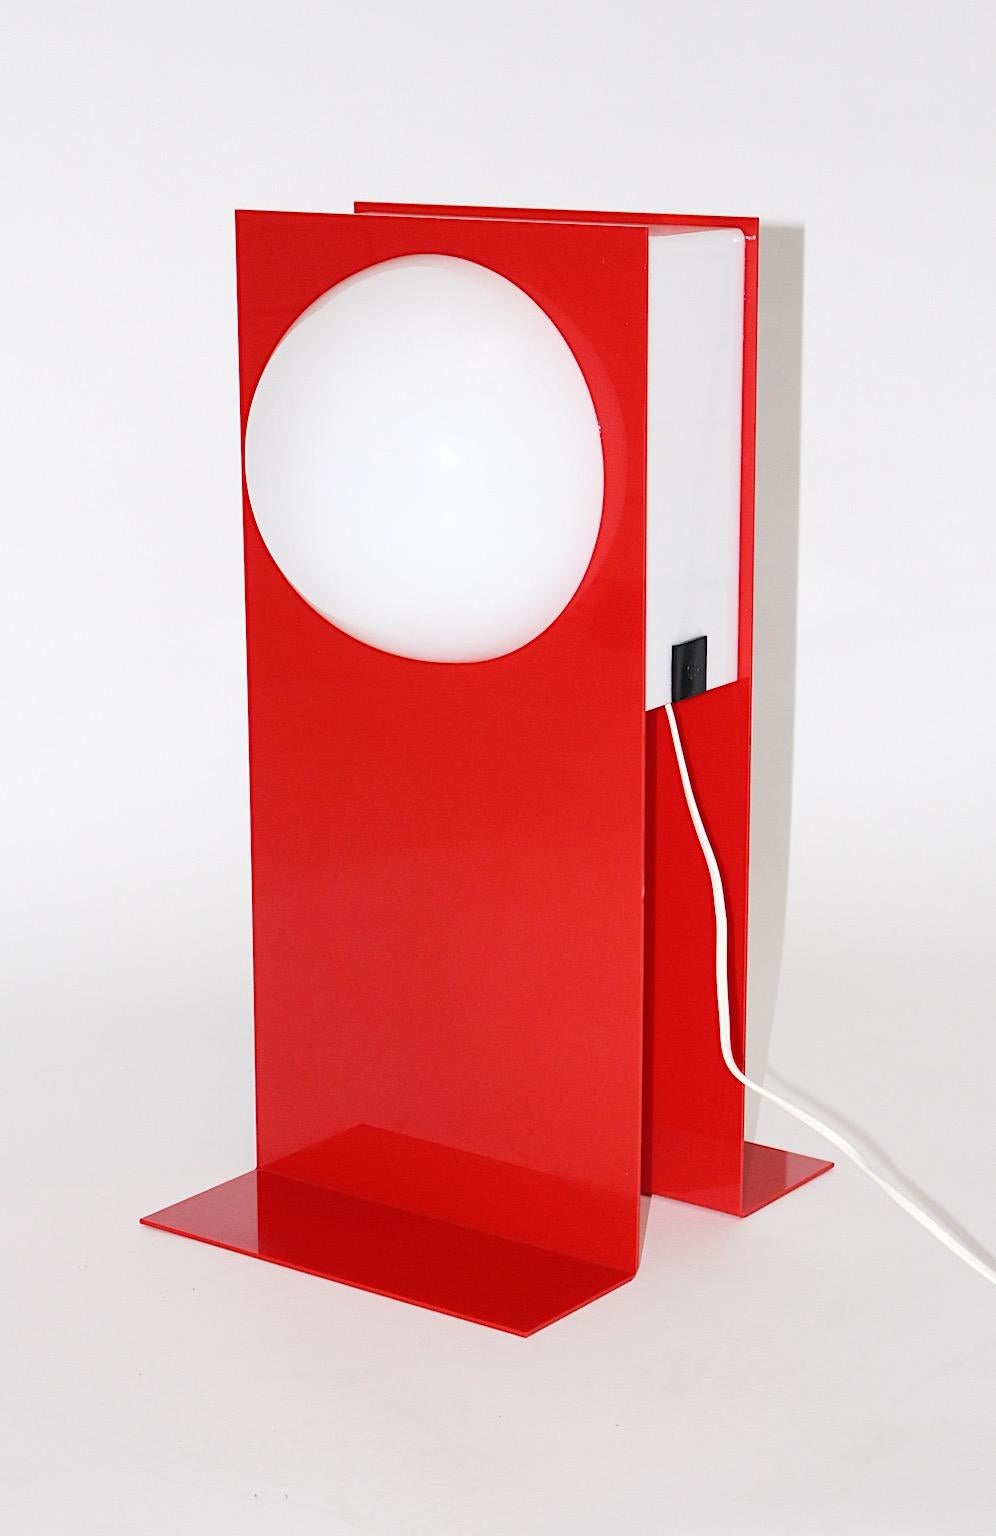 Lampe de table vintage de style postmoderne en plastique dans les tons rouge et blanc, années 1980.
Une belle lampe de table en plastique présente une signature avec les initiales HG, probablement les initiales de l'artiste. 
La partie supérieure